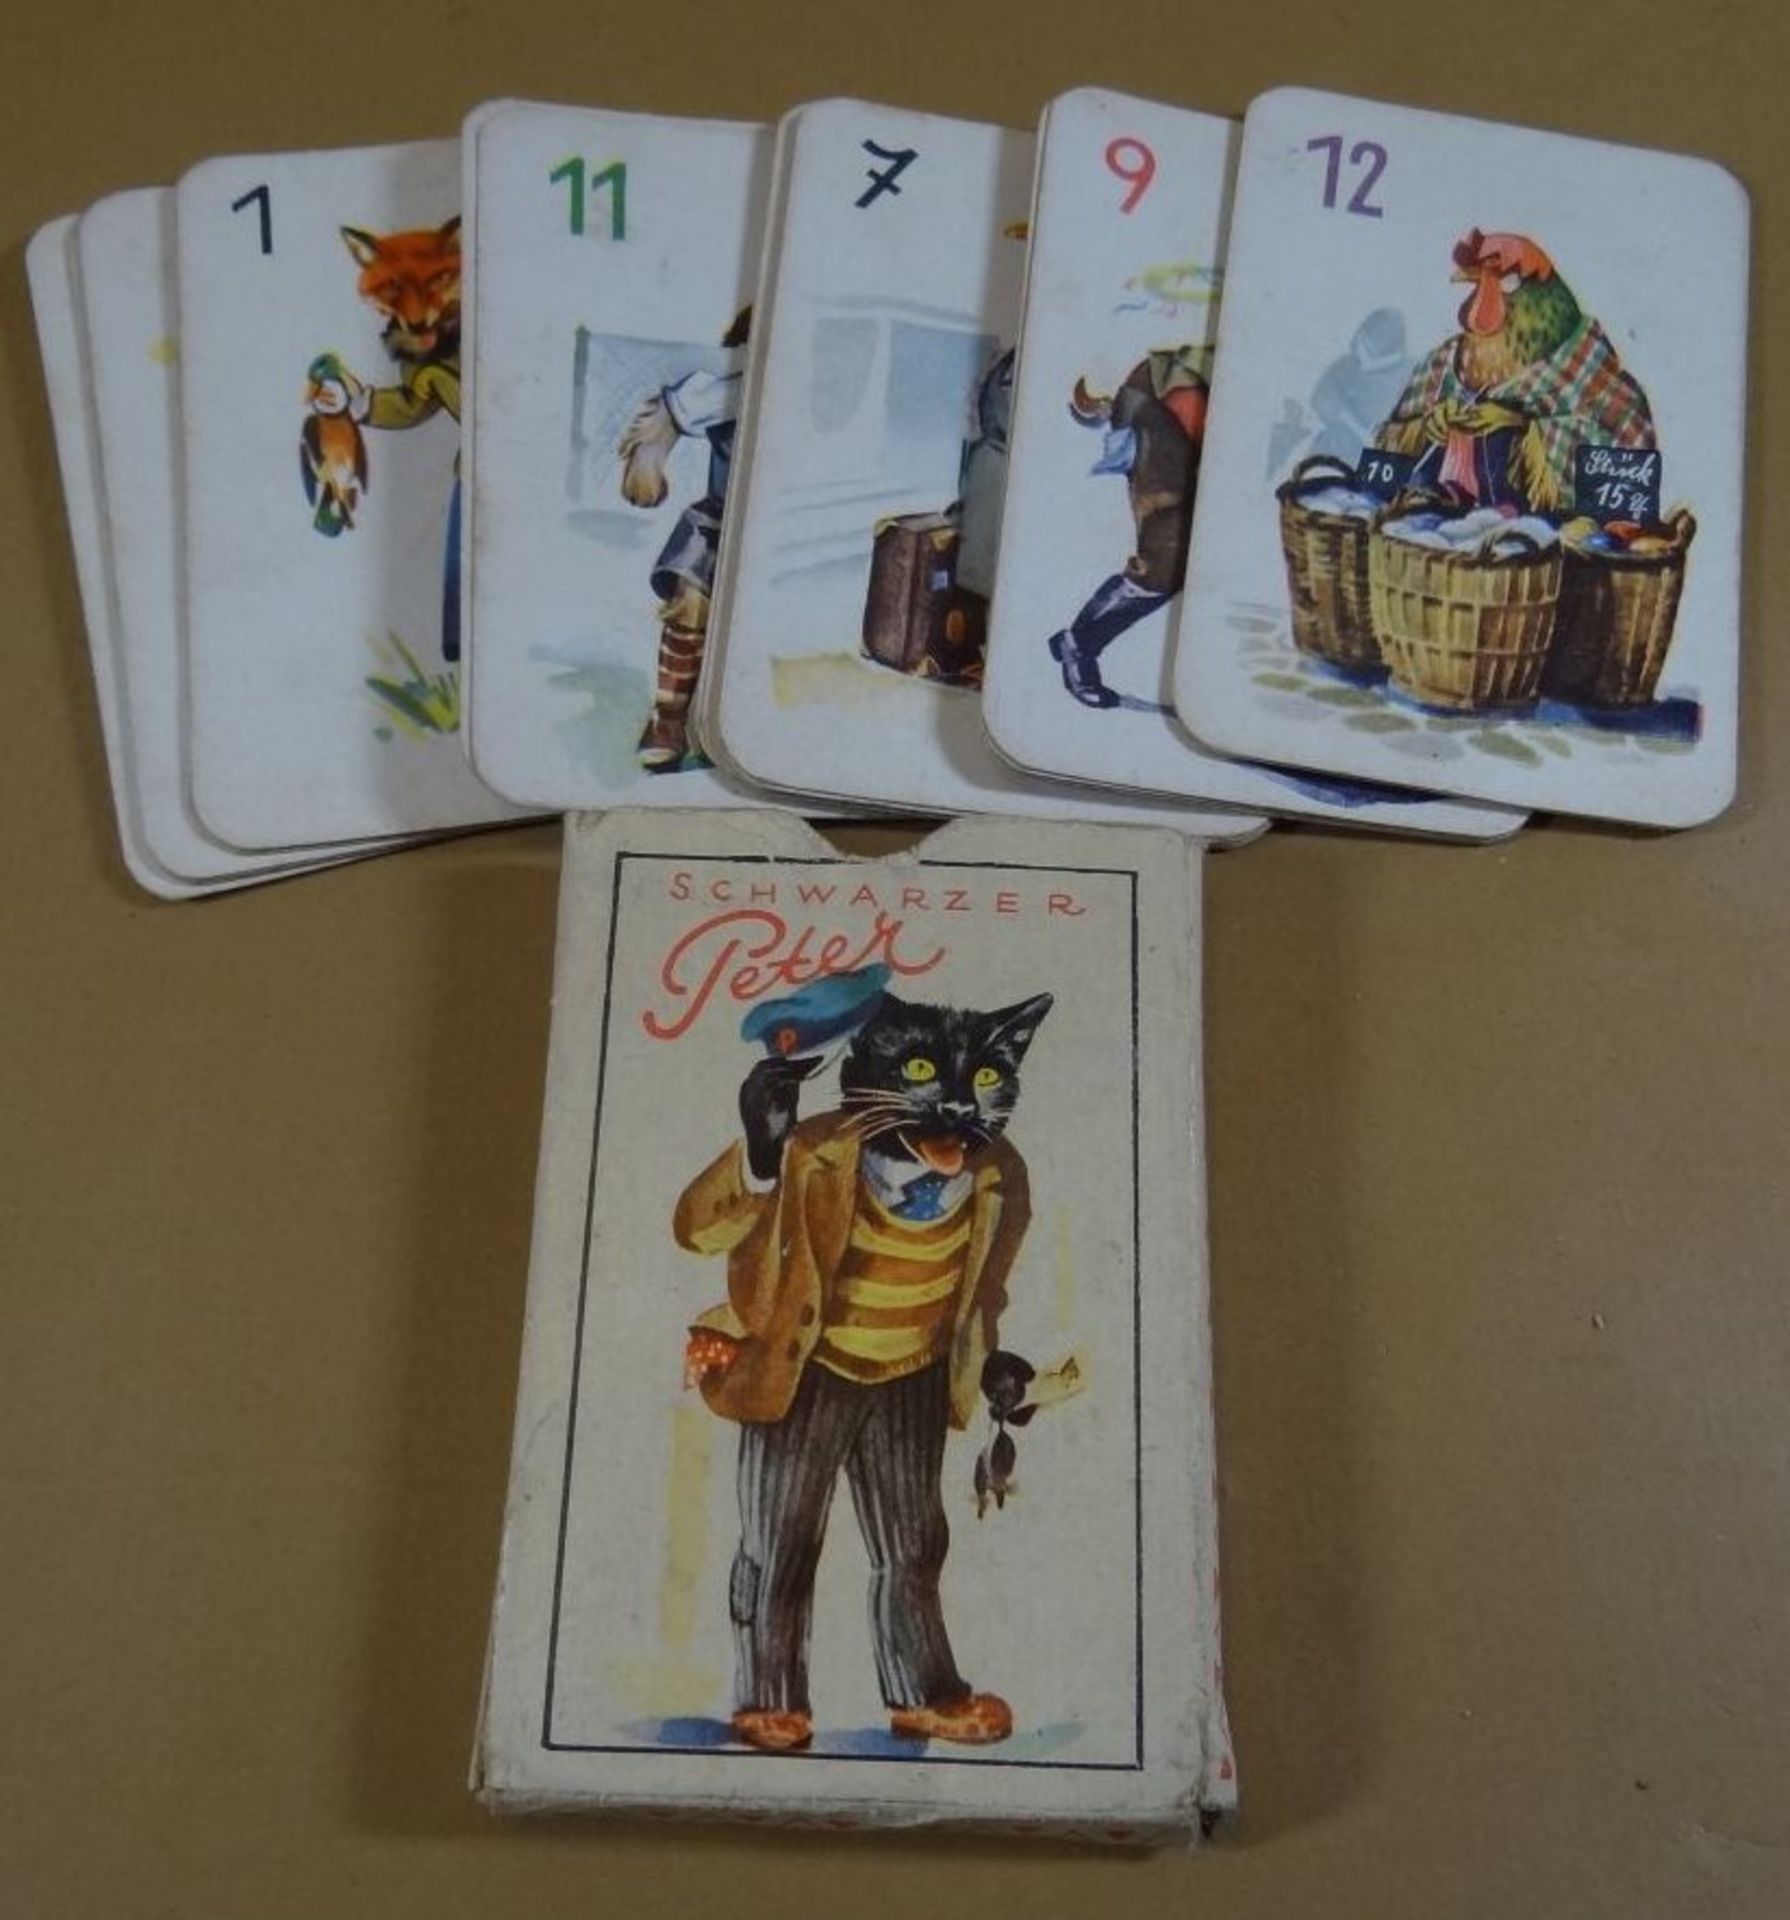 altes Kartenspiel "Schwarzer Peter", wohl vollständig